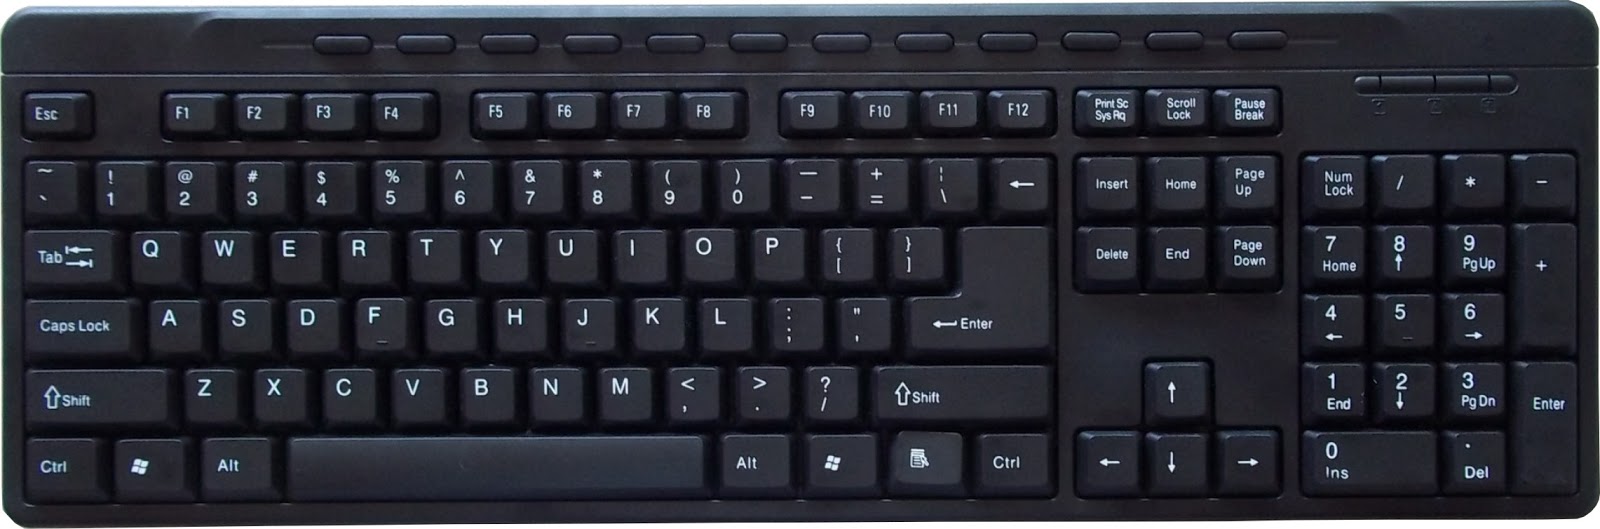 Kumpulan Kode Perintah Keyboard Di AutoCAD Agar Mempercepat